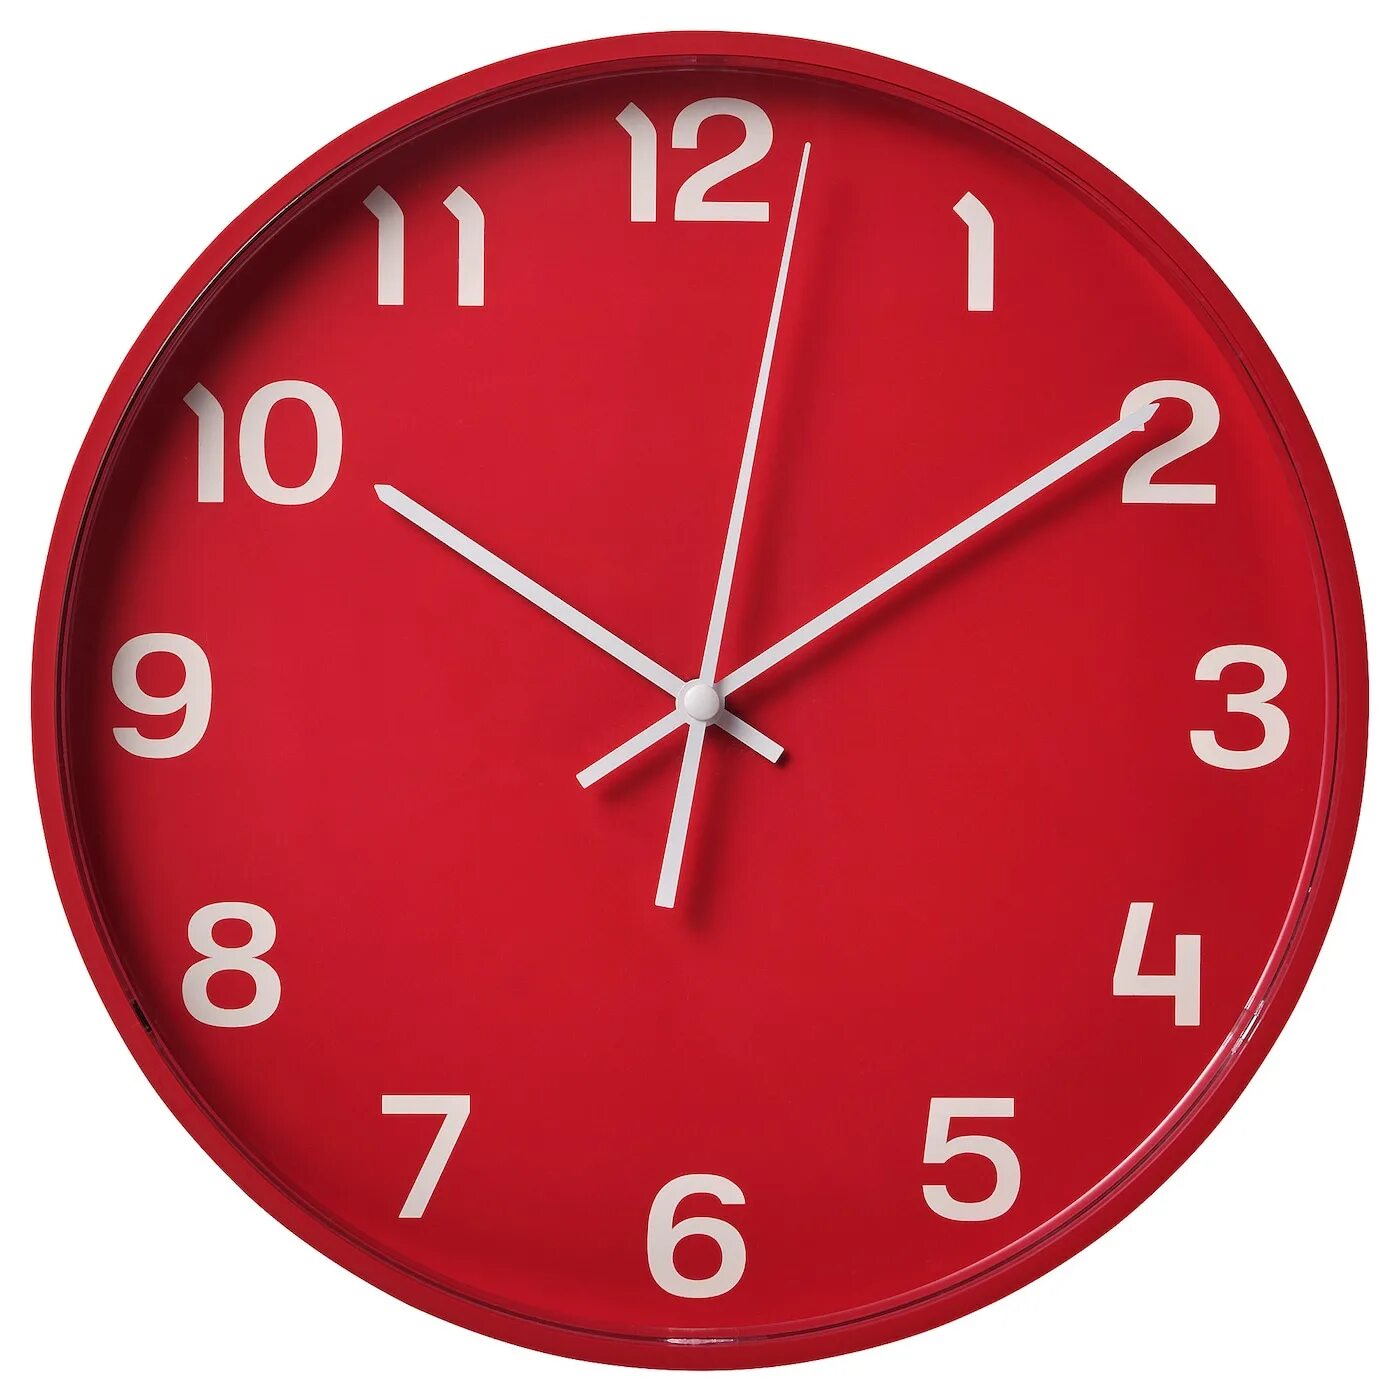 Pluttis настенные часы, низкое напряжение/красный, 28 см. Часы икеа плуттис красный. Часы настенные икеа плуттис. Часы красные ikea. 14 28 на часах